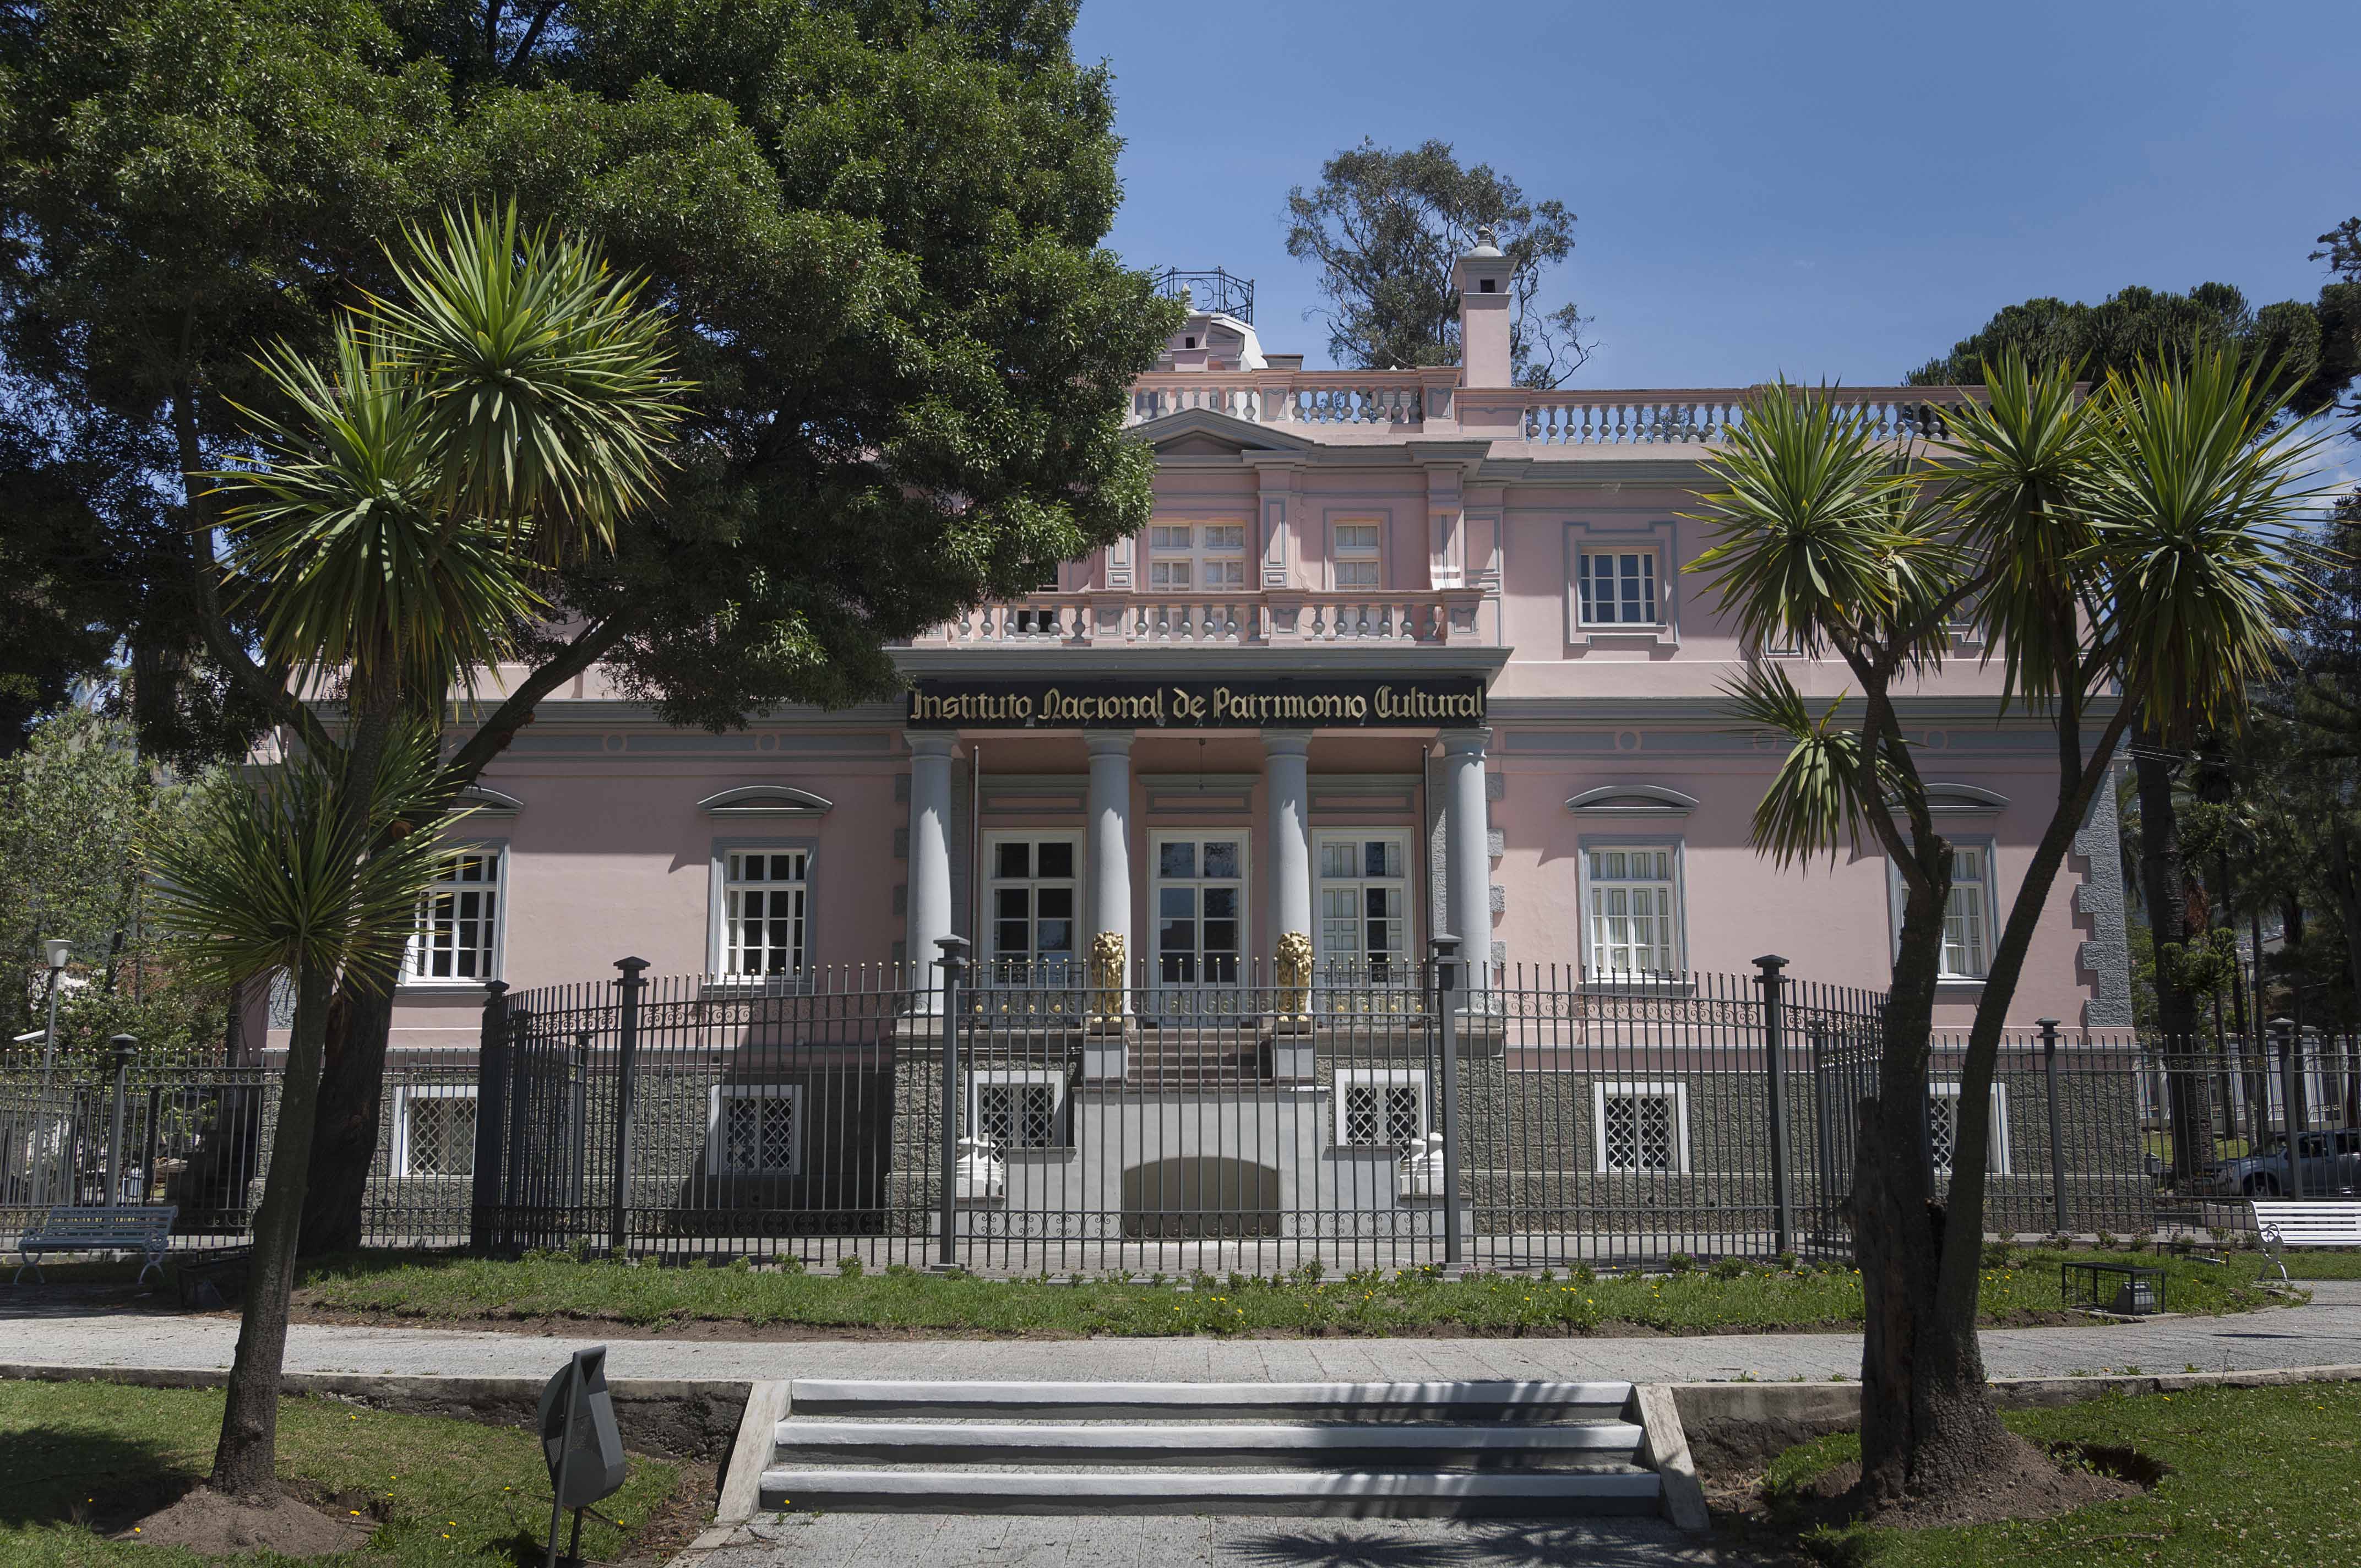 ENTRADA DE LOS LEONES – Instituto Nacional de Patrimonio Cultural